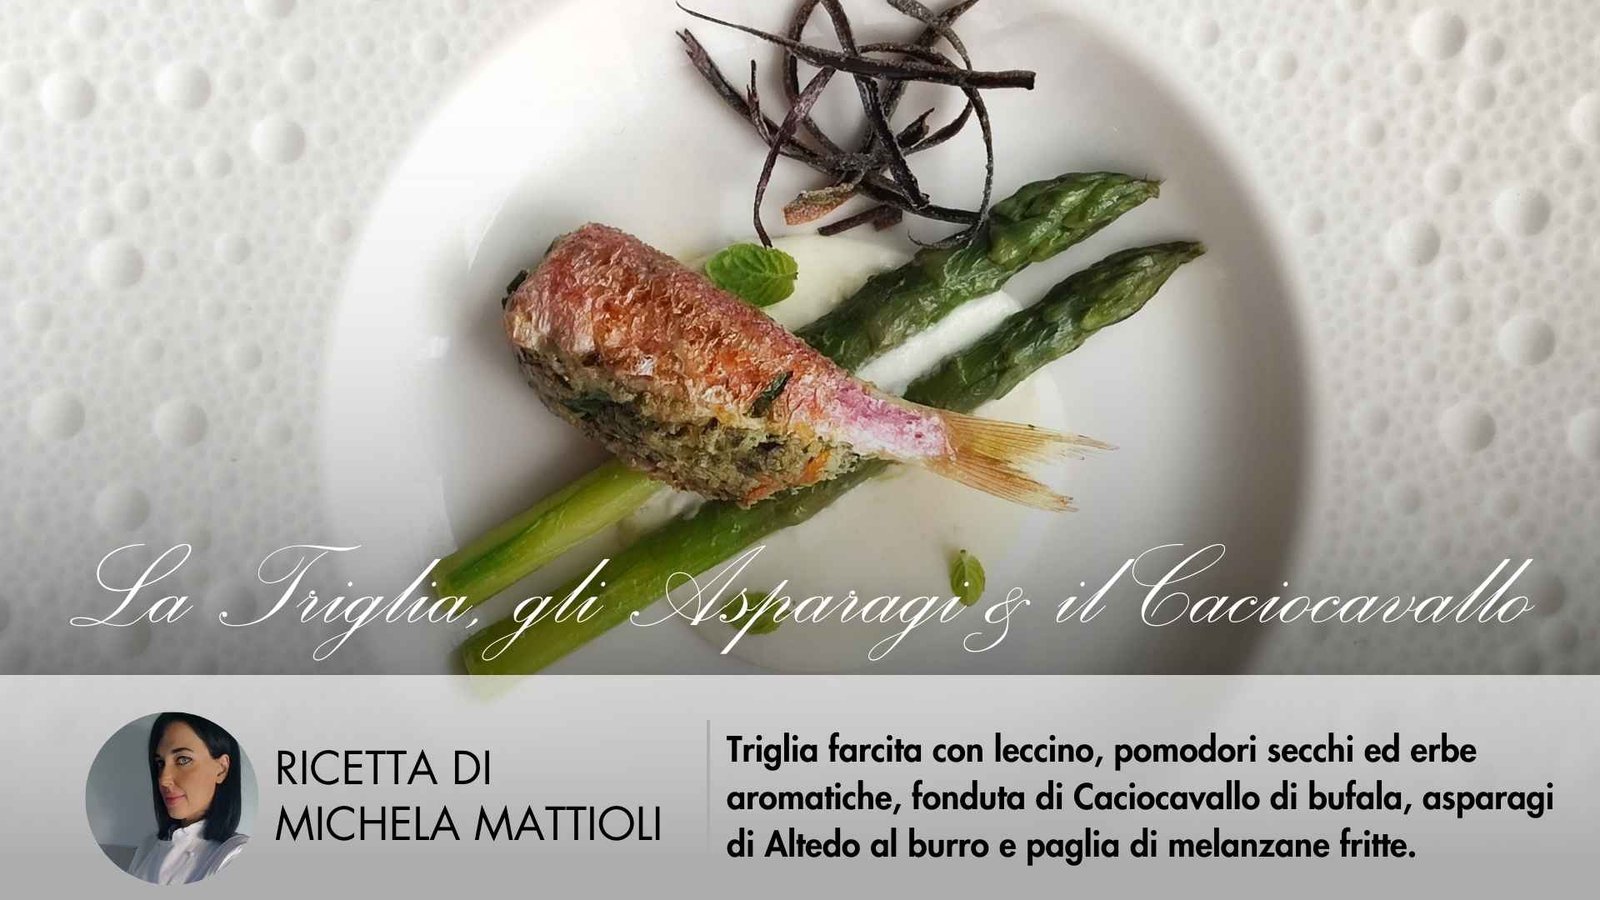 La Triglia Farcita, gli Asparagi & il Caciocavallo | Chef Michela Mattioli